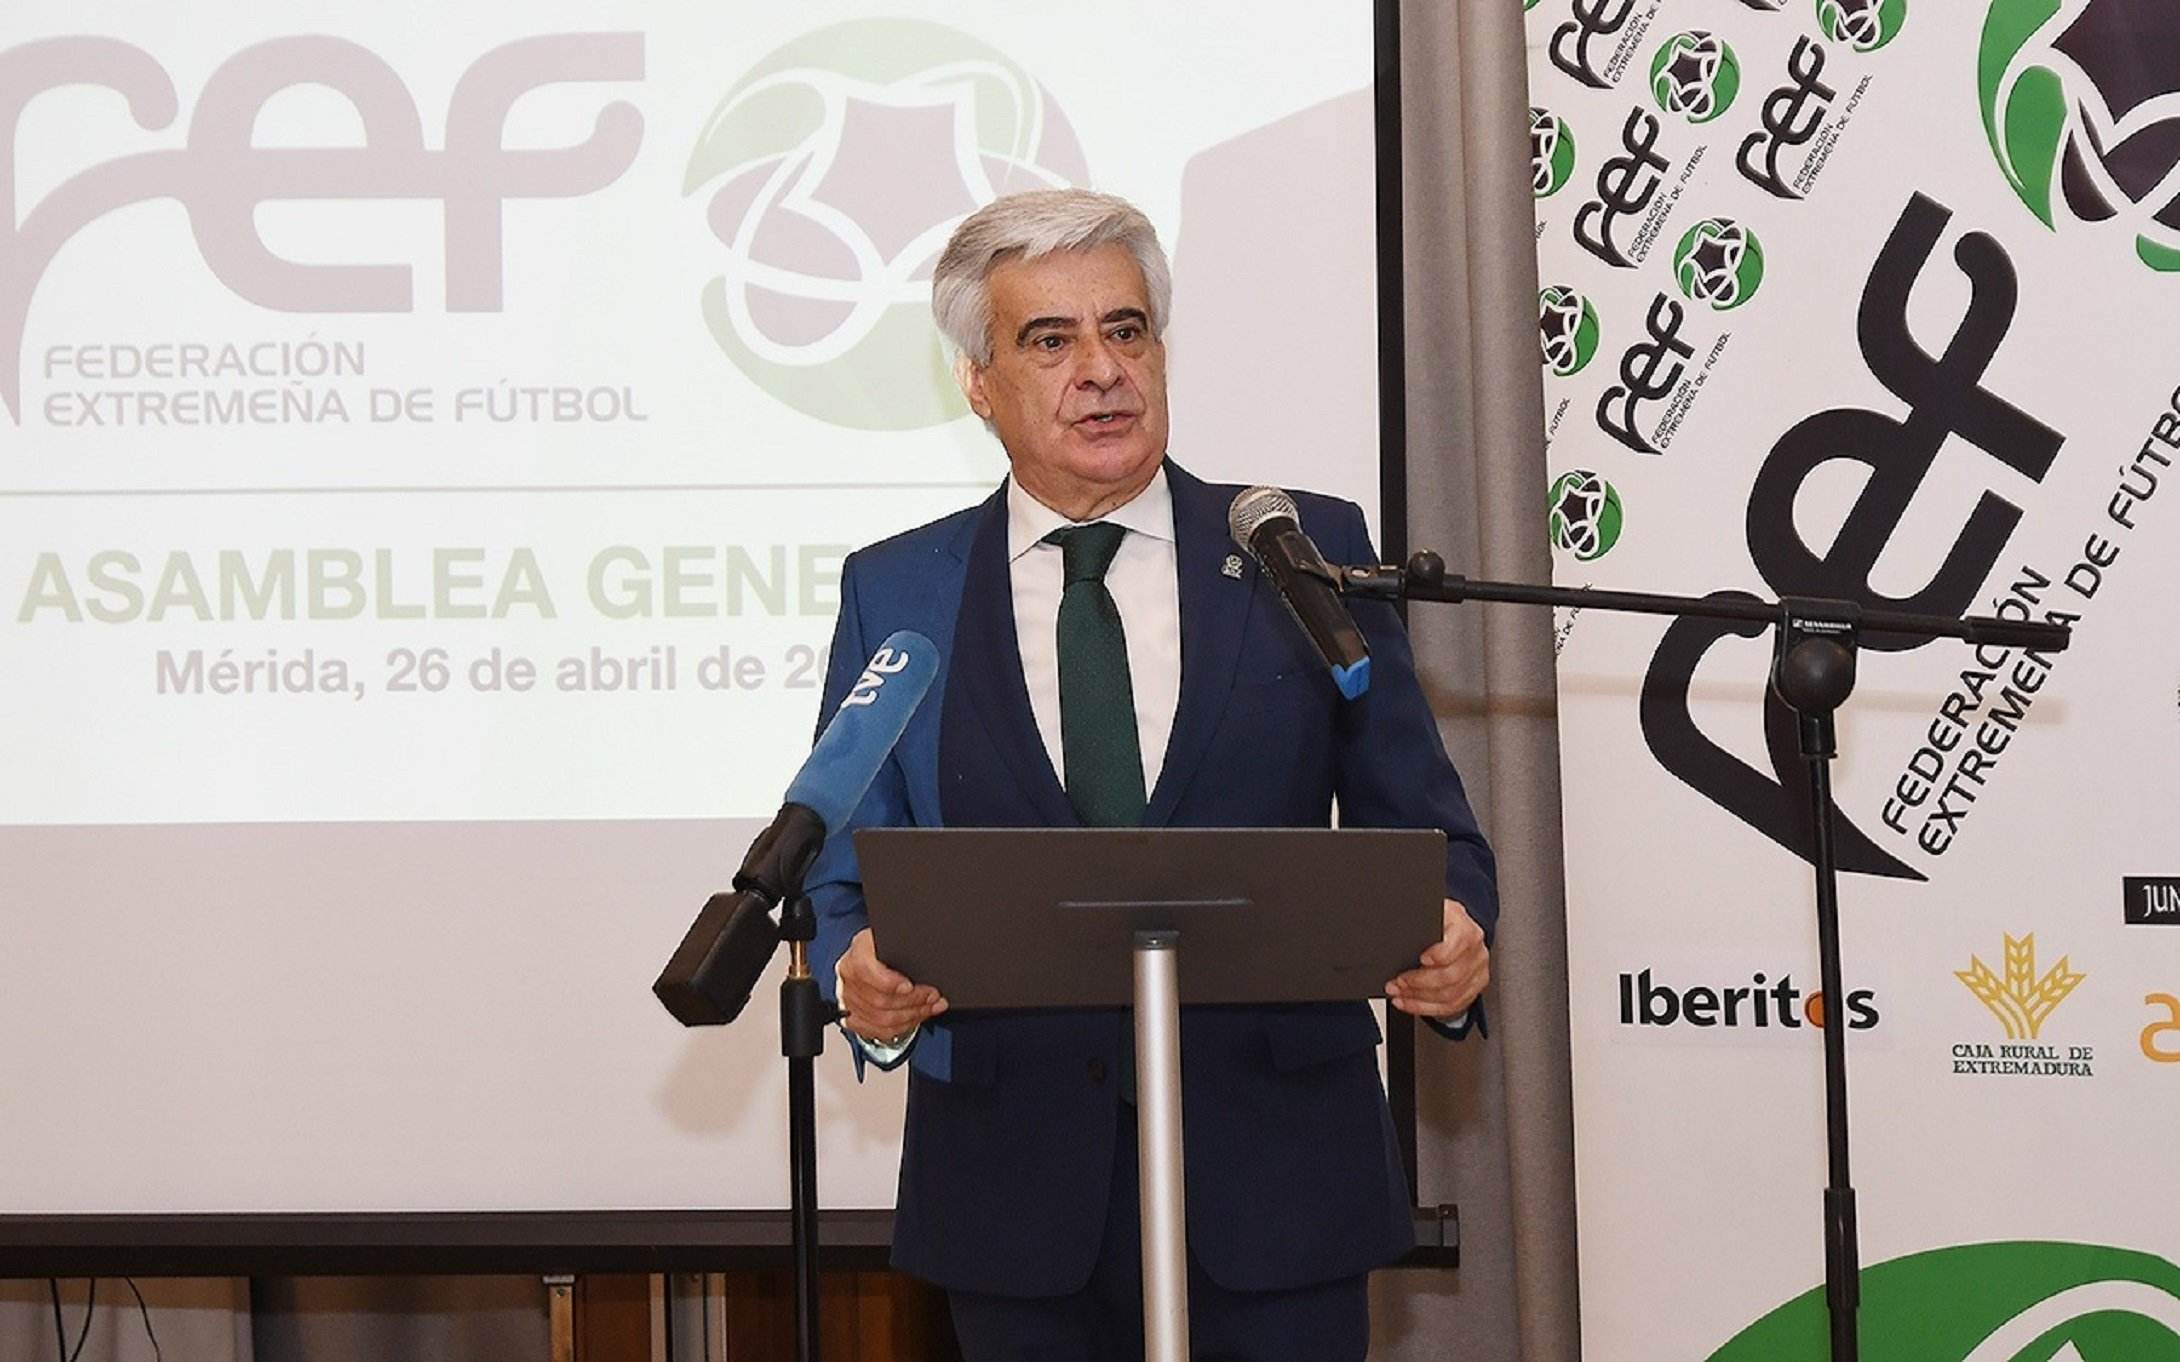 La RFEF ara demana perdó "al món del futbol" pel comportament de Rubiales